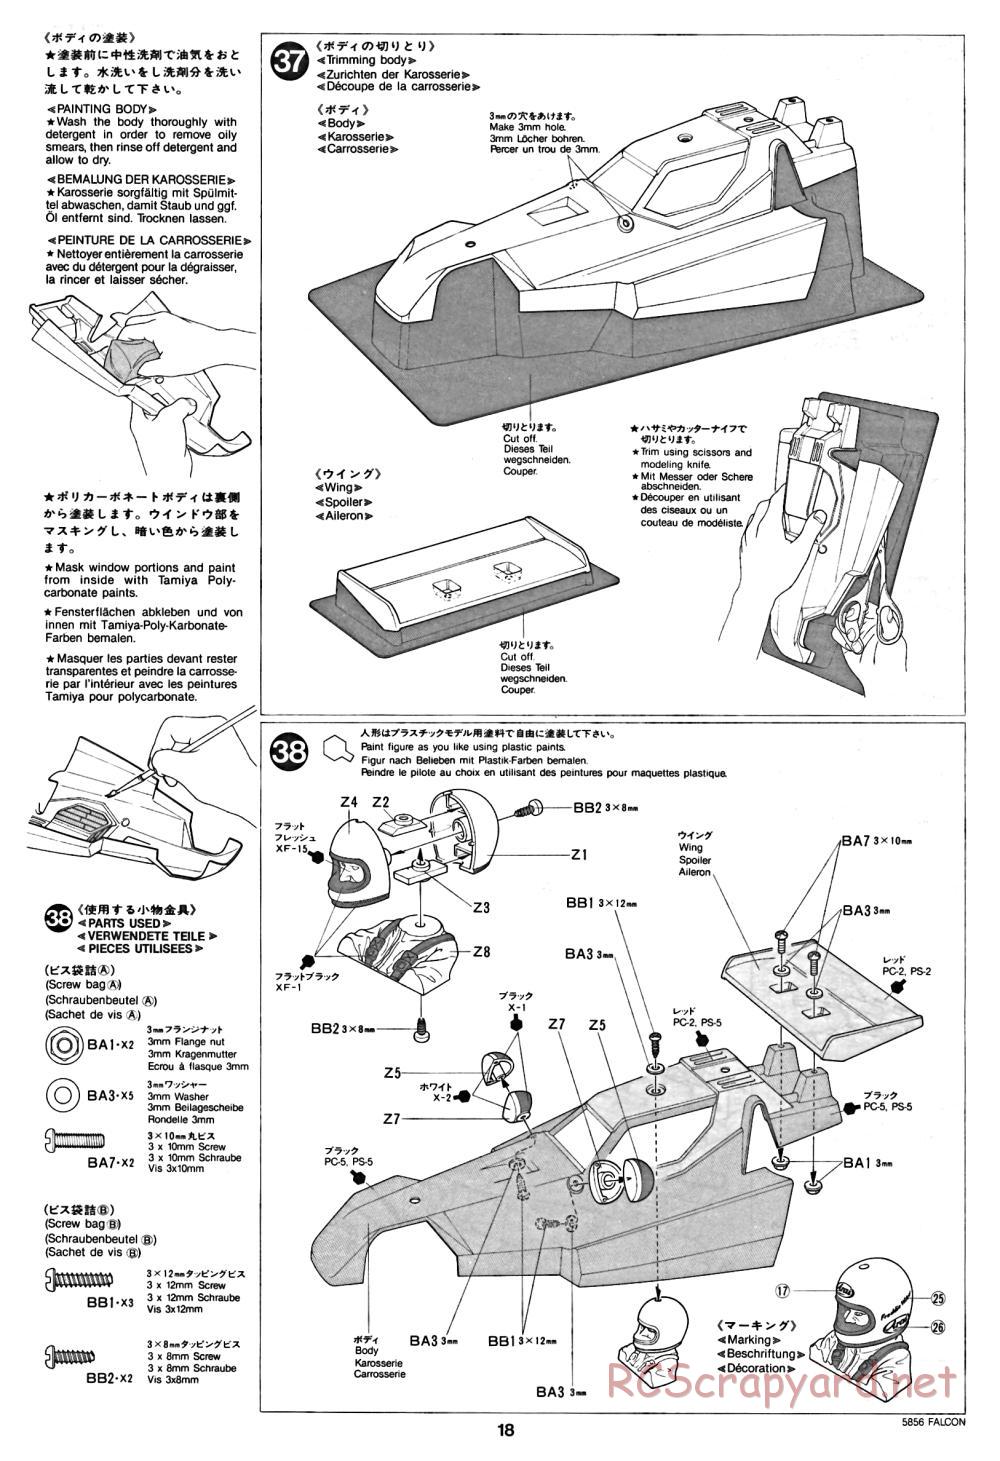 Tamiya - The Falcon - 58056 - Manual - Page 18